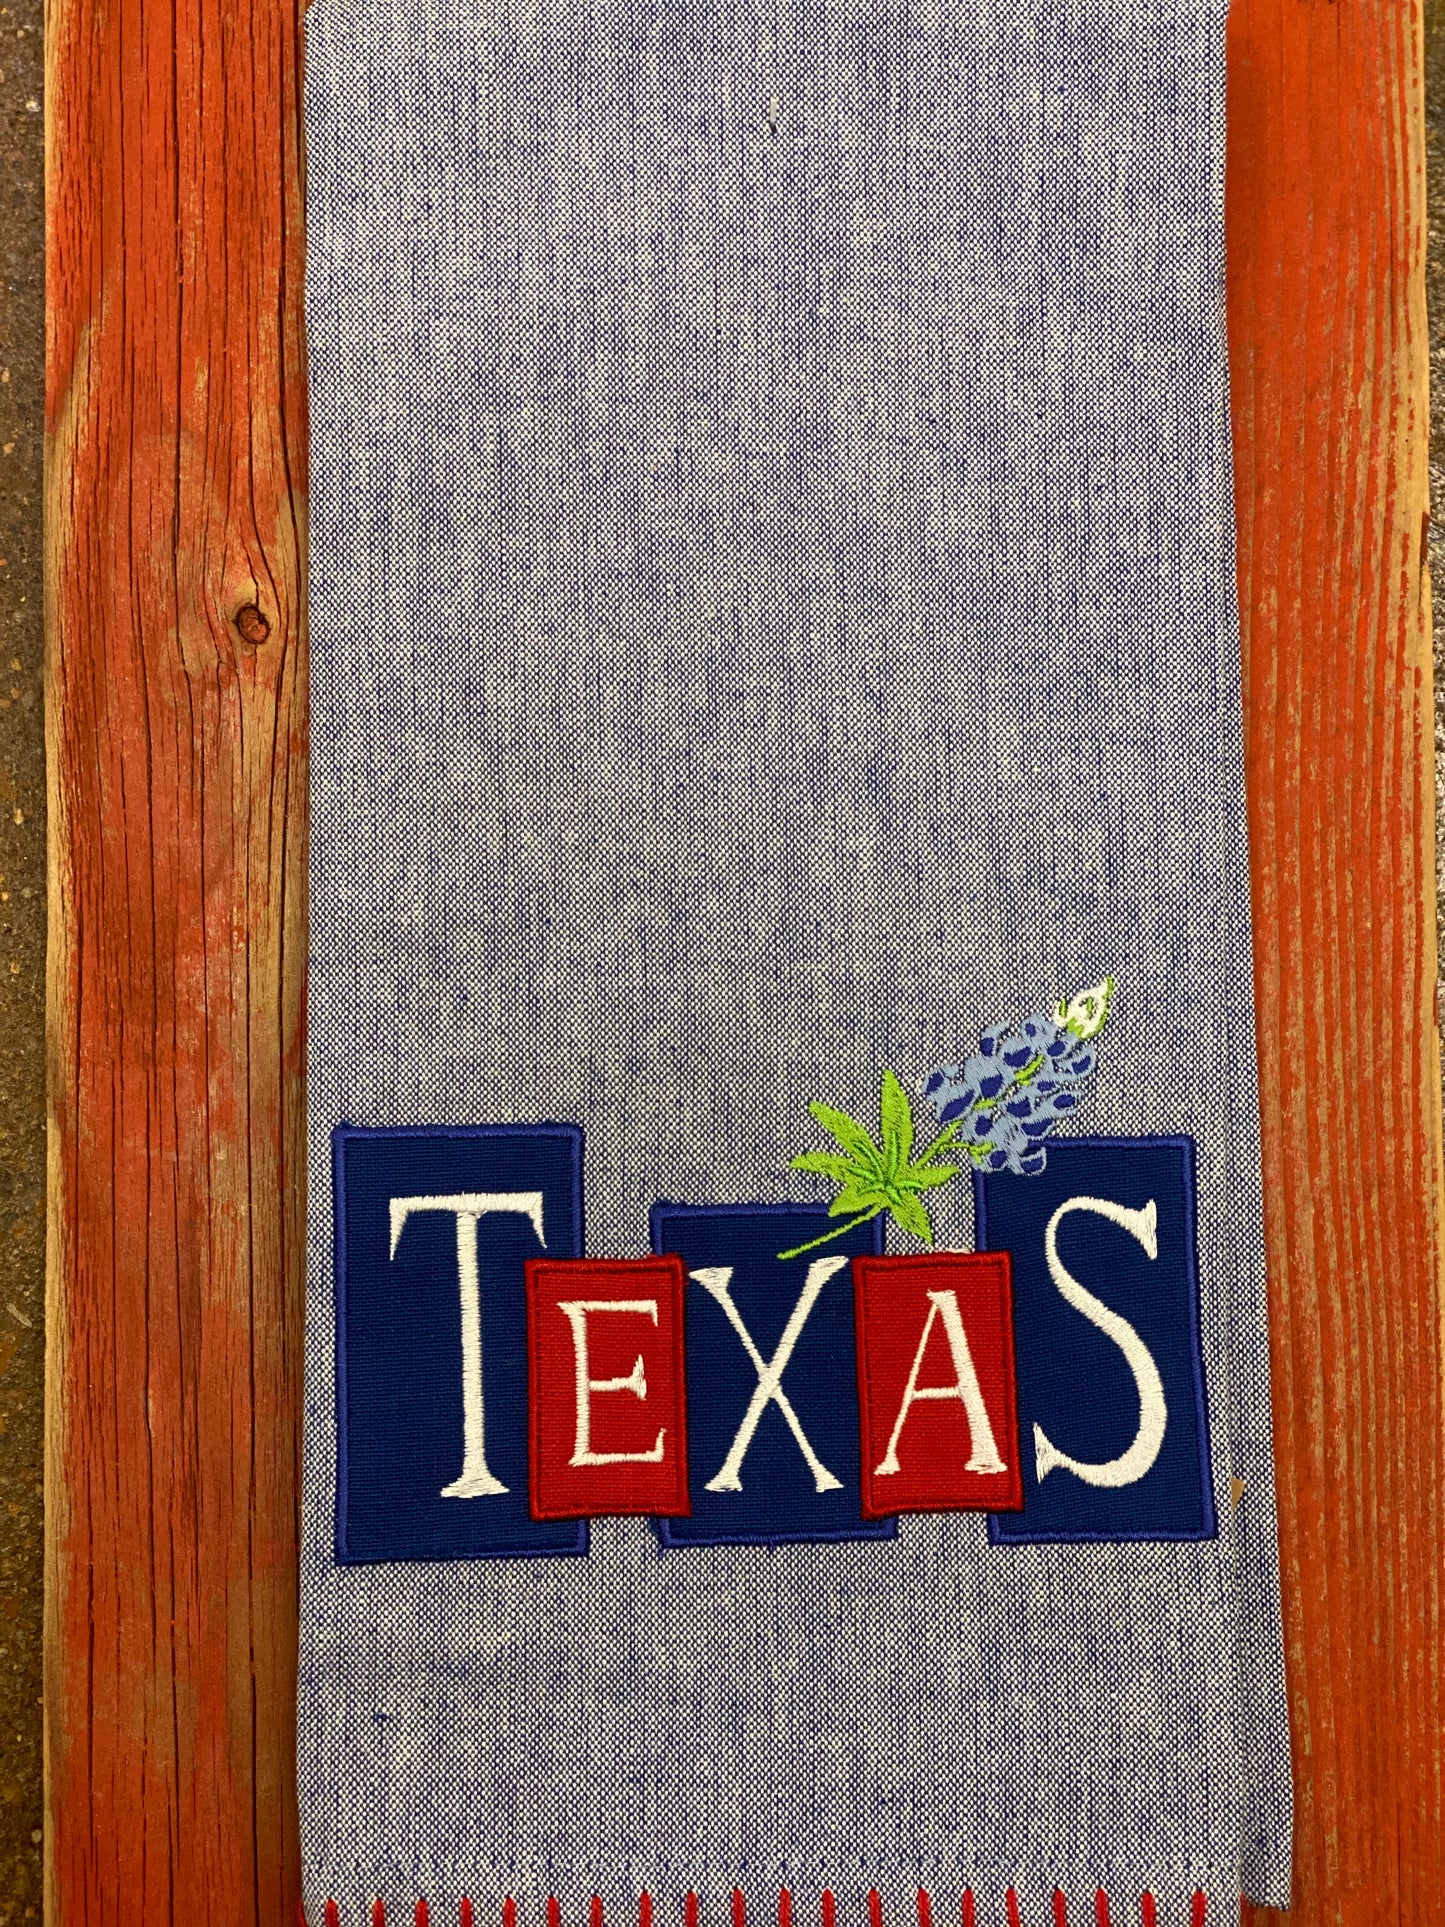 Texas Tee Towels